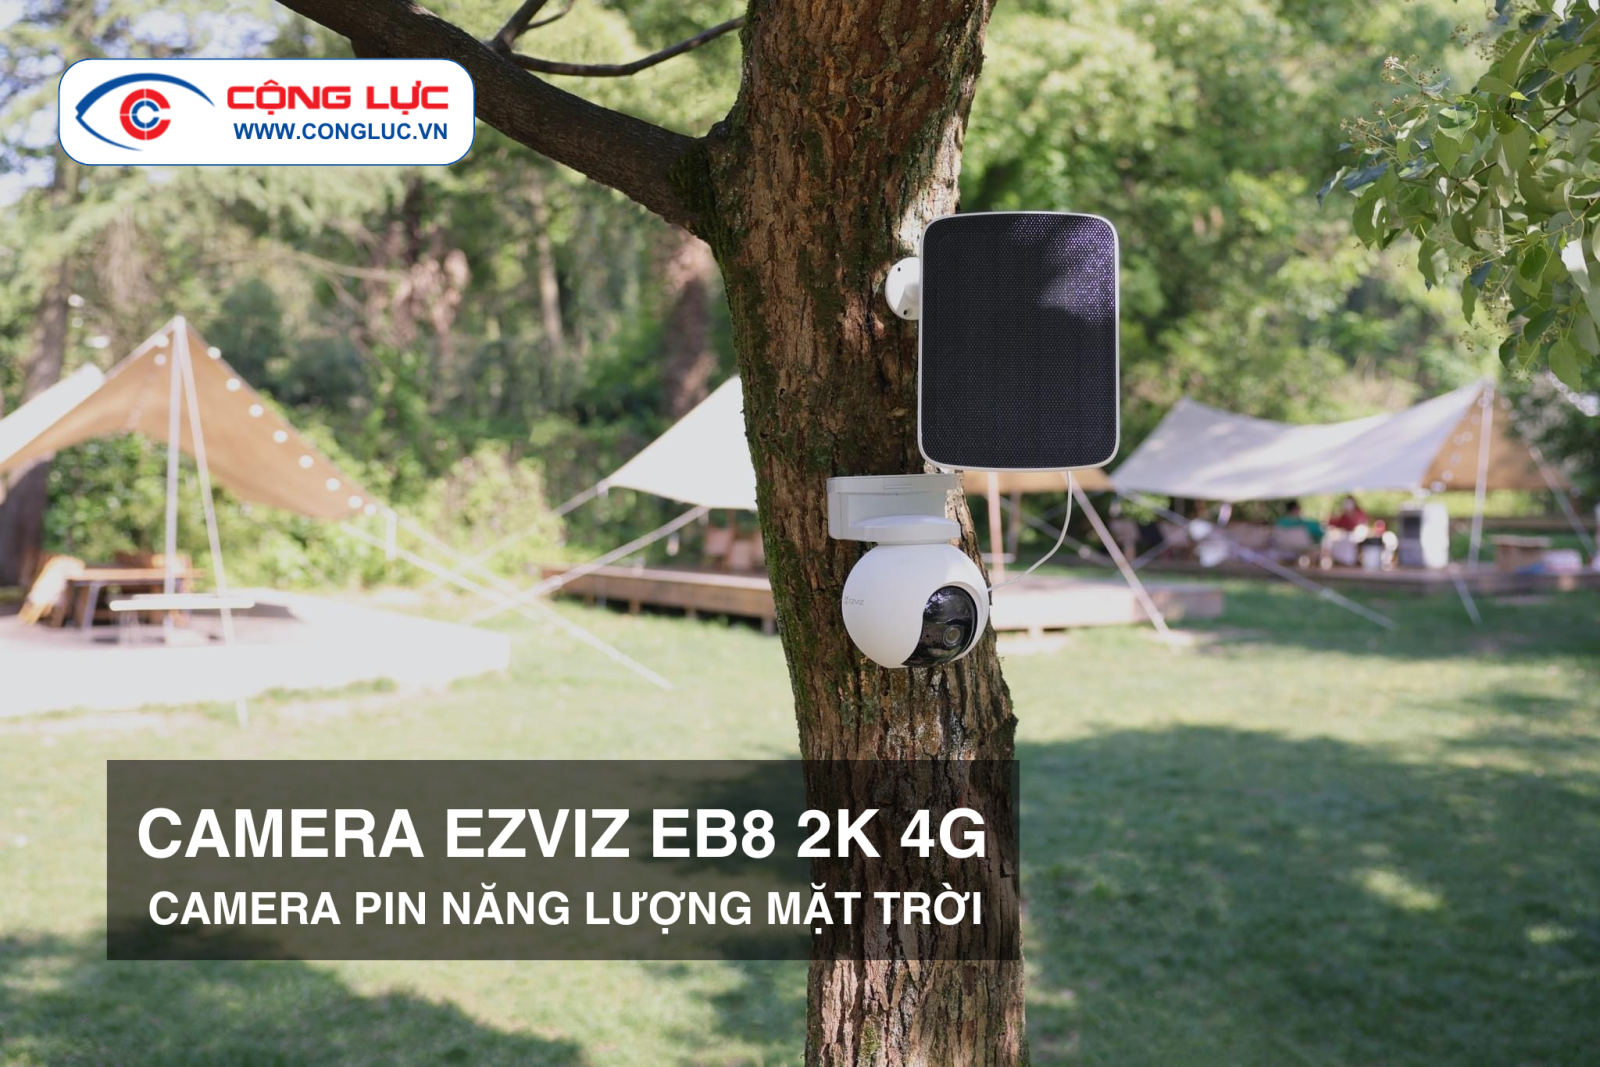 bán camera Pin năng lượng mặt trời Ezviz EB8 4G 2K giá rẻ tại Hải Phòng